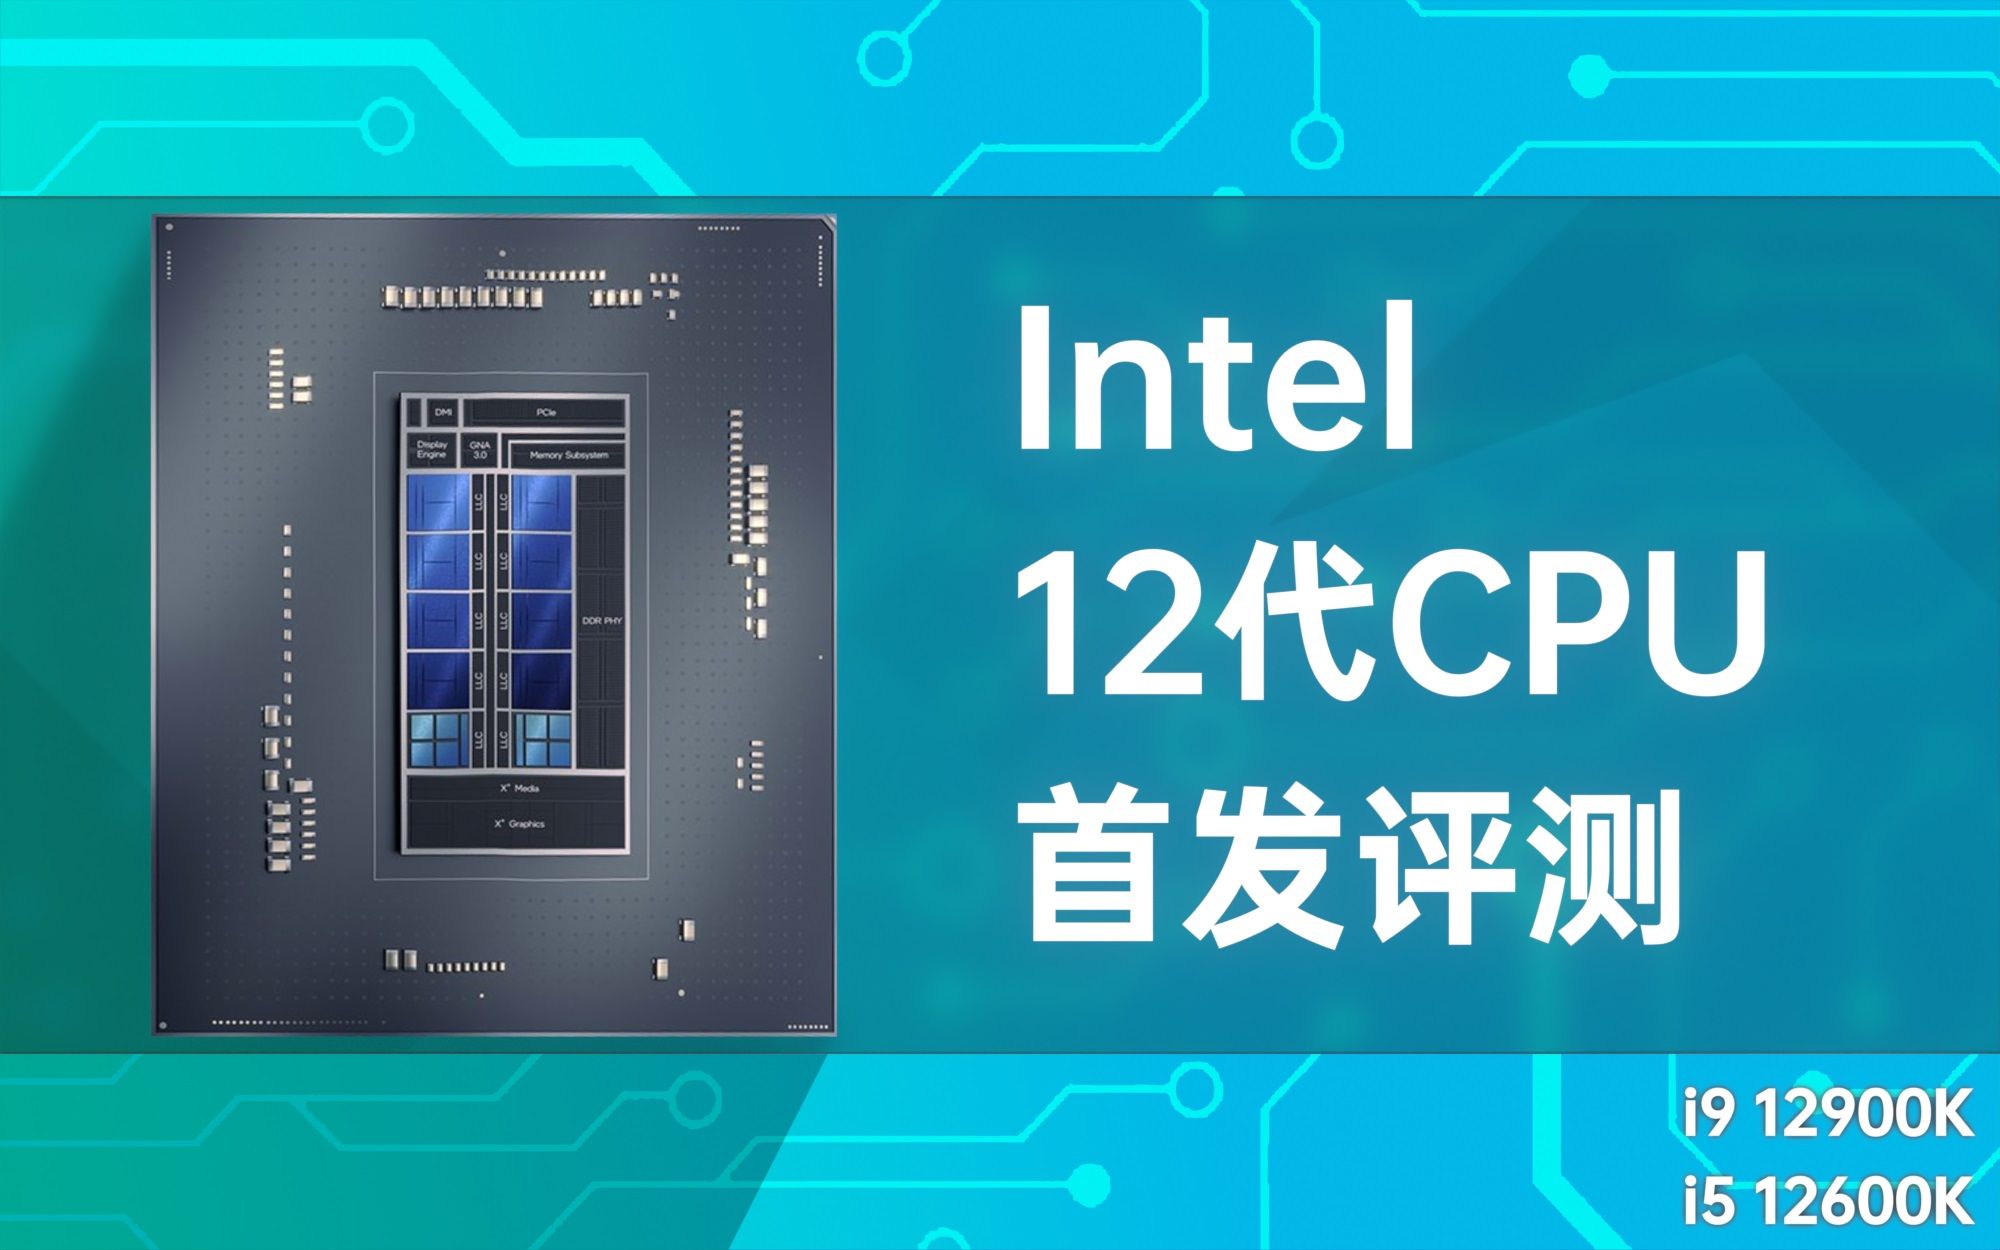 这英特尔12代CPU有点强啊！